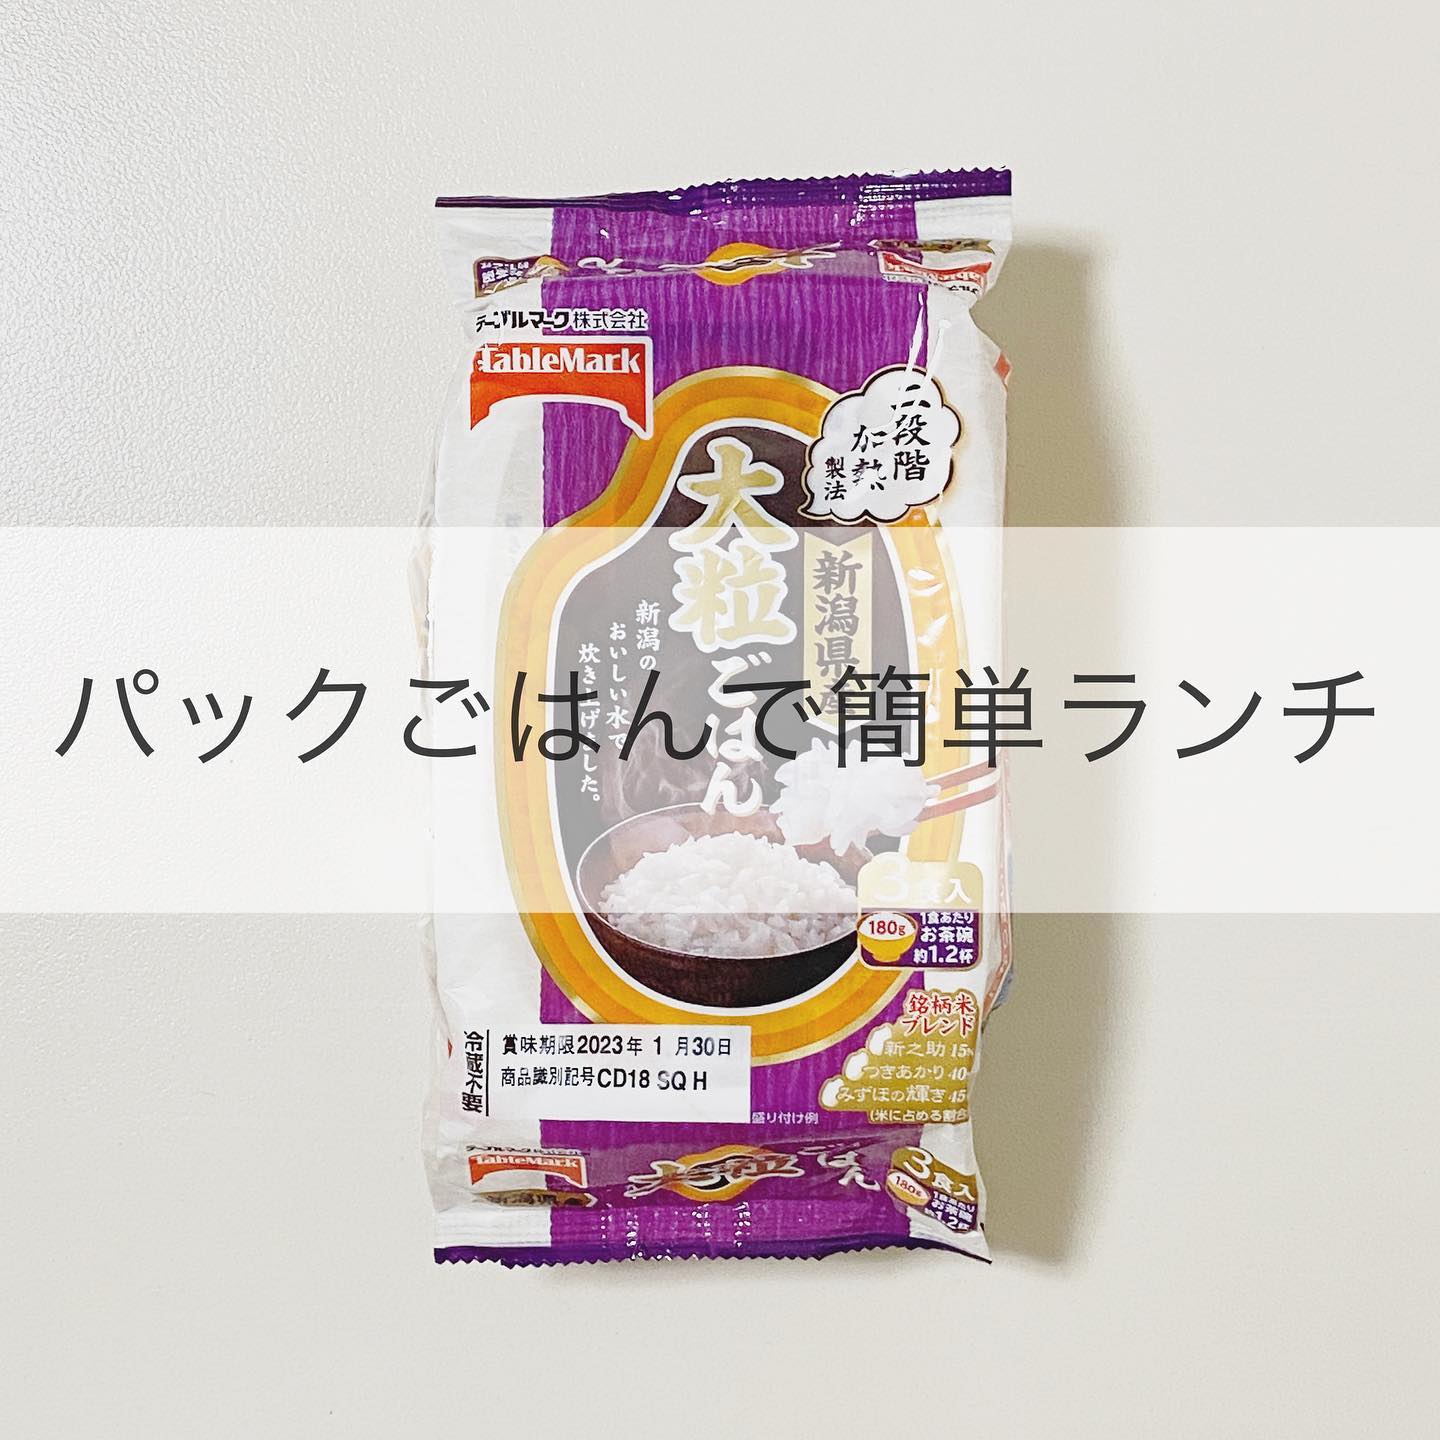 口コミ投稿：𓎩𓈒..@tablemark_jp さんの新商品『大粒ごはん』でお昼作ったよー！..@tablemark_jp …